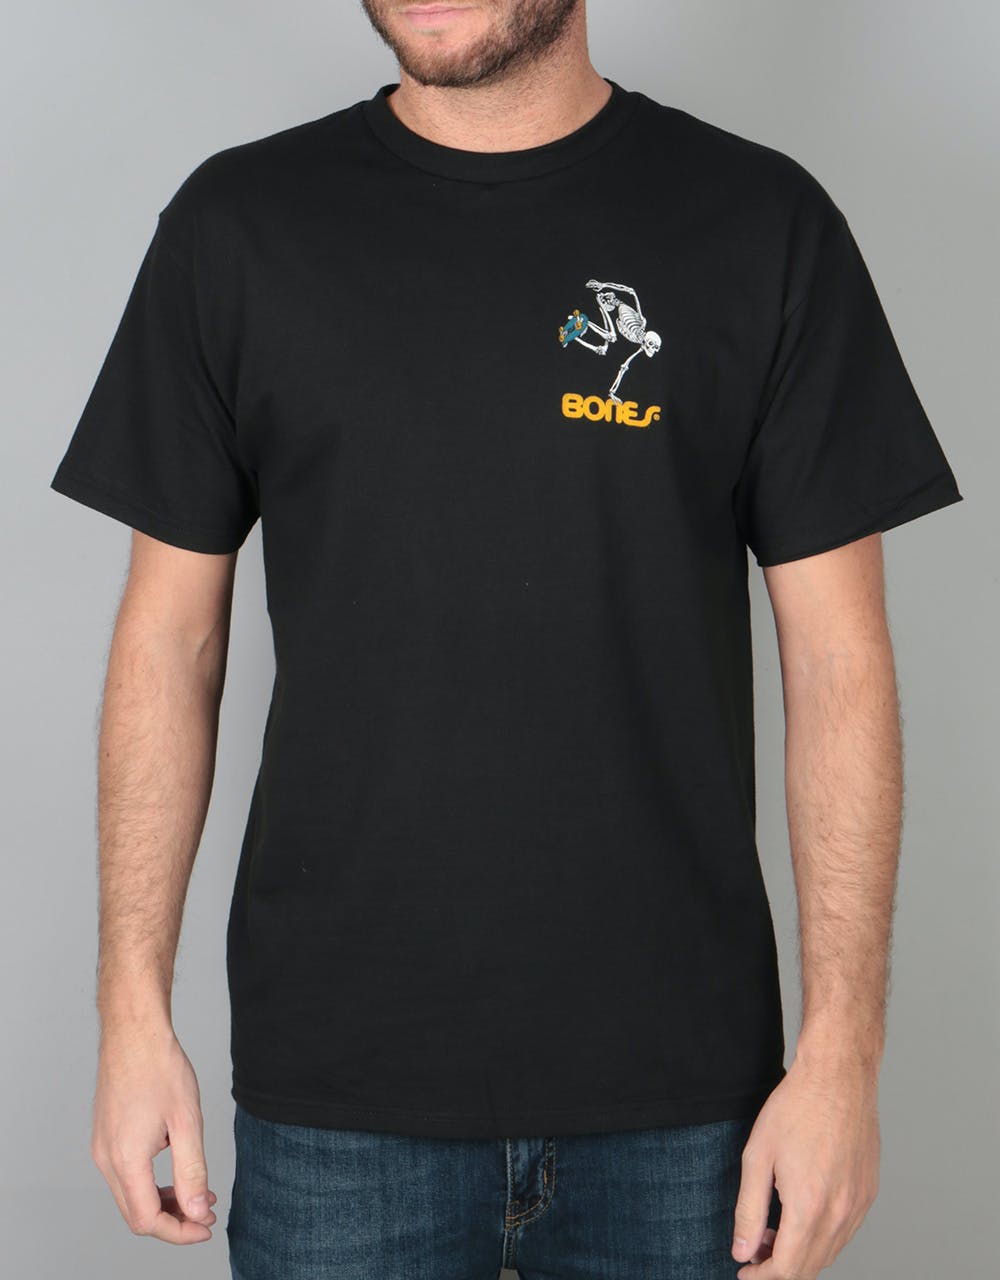 Powell Peralta Skateboard Skeleton T-Shirt - Black